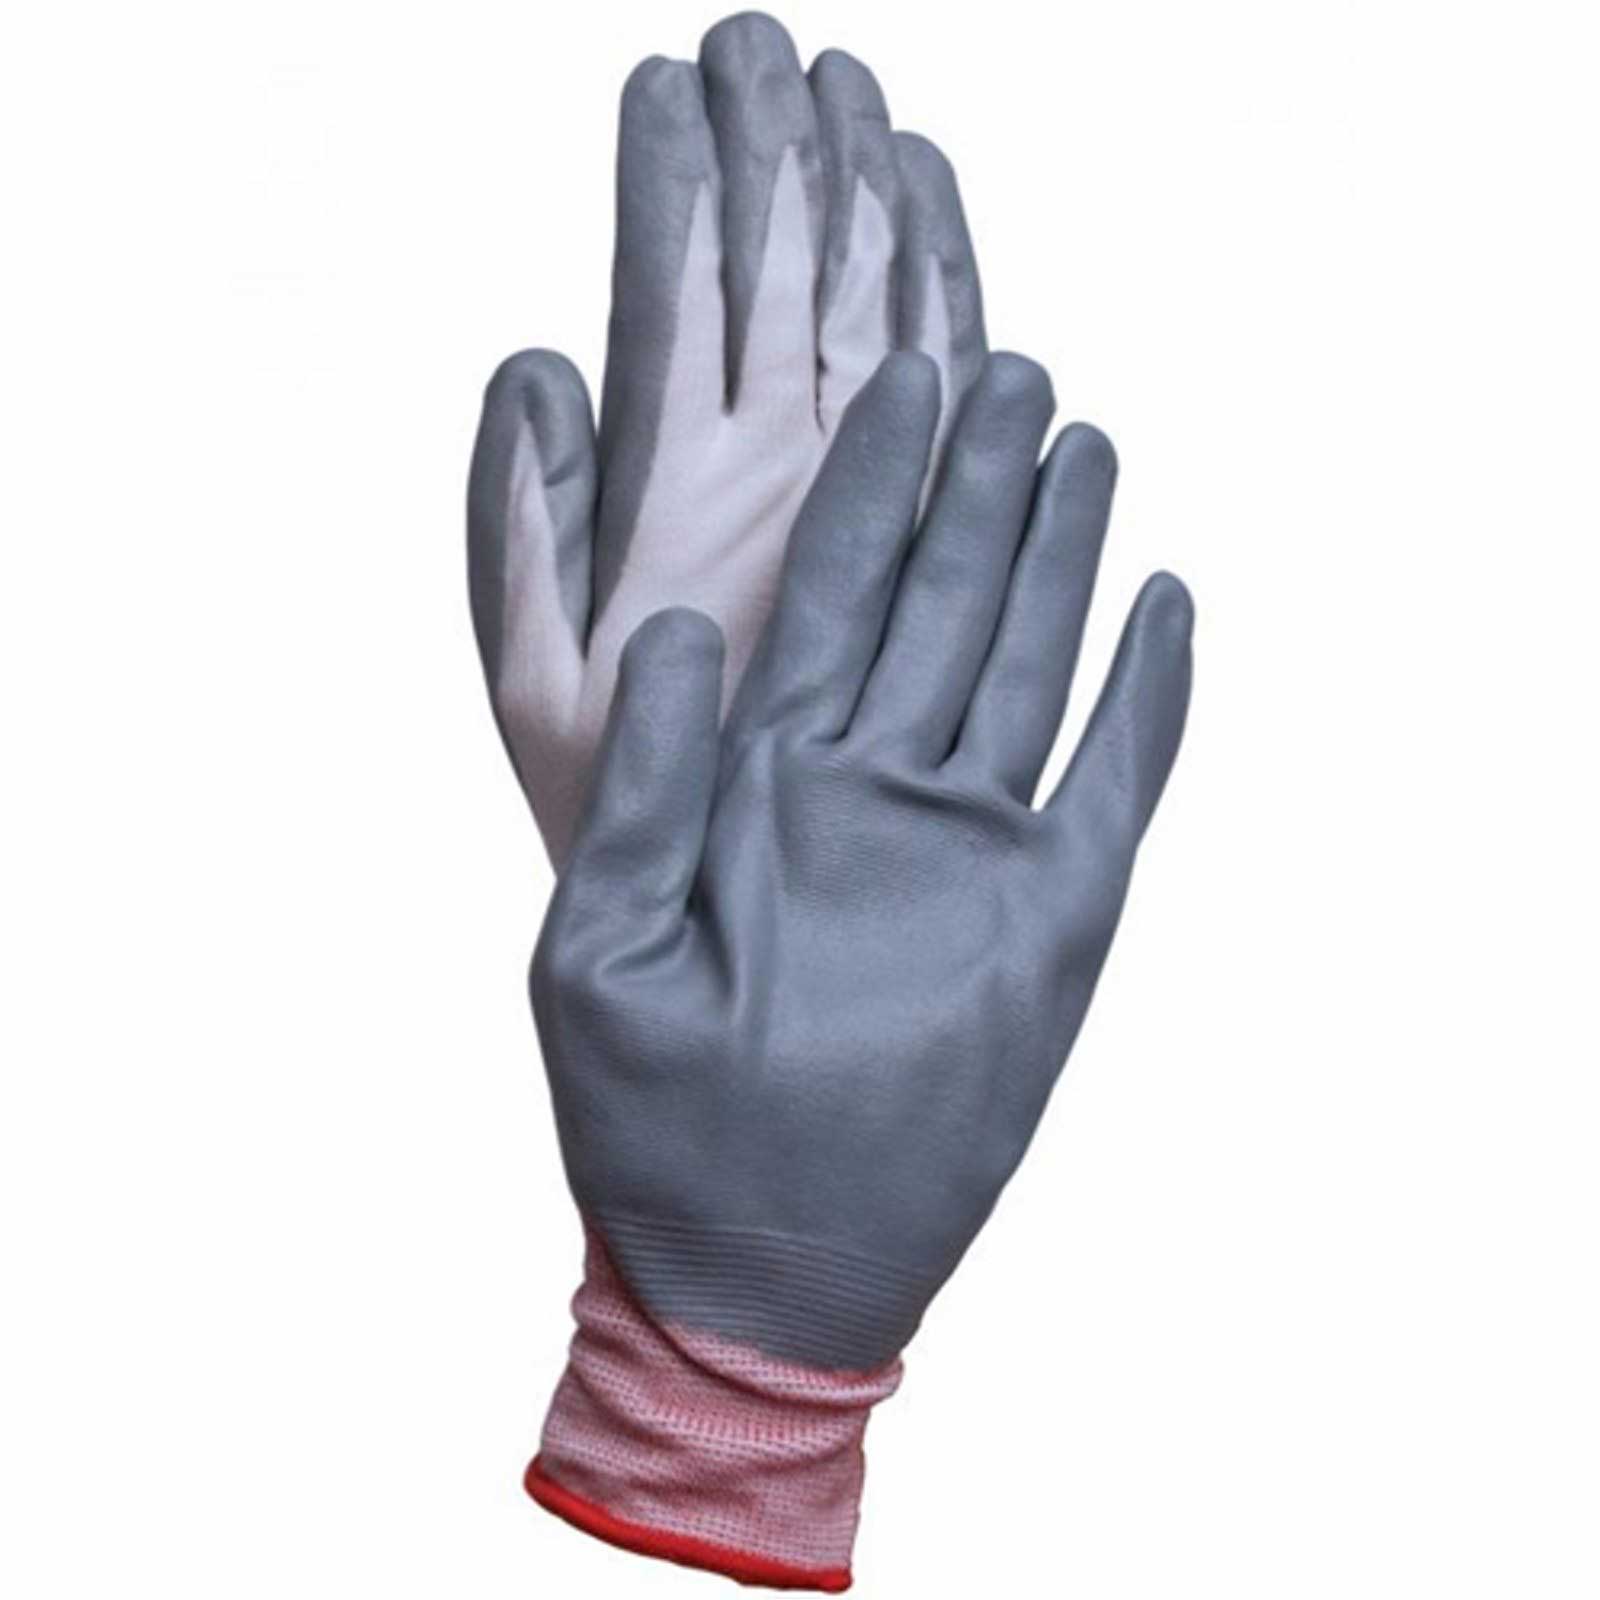 dr gloves